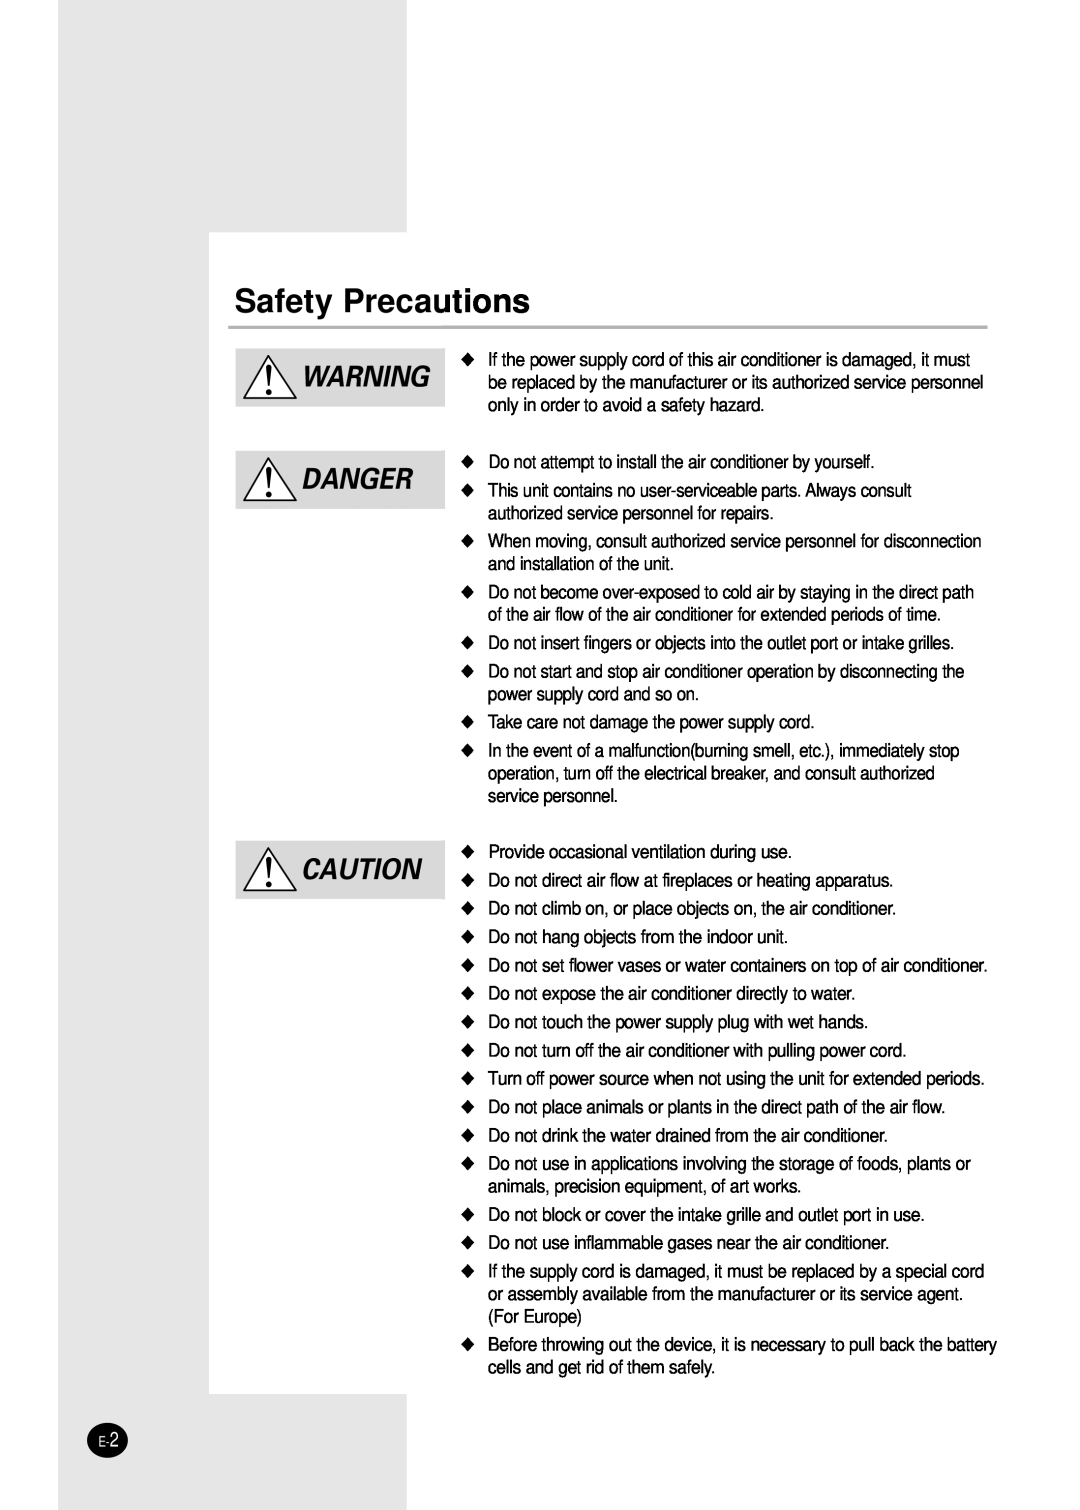 Samsung UQ09SBGE, AQ24S6GB, UQ07SBGE, UQ12SBGE, UQ09S8GE, UQ12SGGB, UQ07S8GE, UQ12SGGE, AQ18S0GB manual Safety Precautions, Danger 